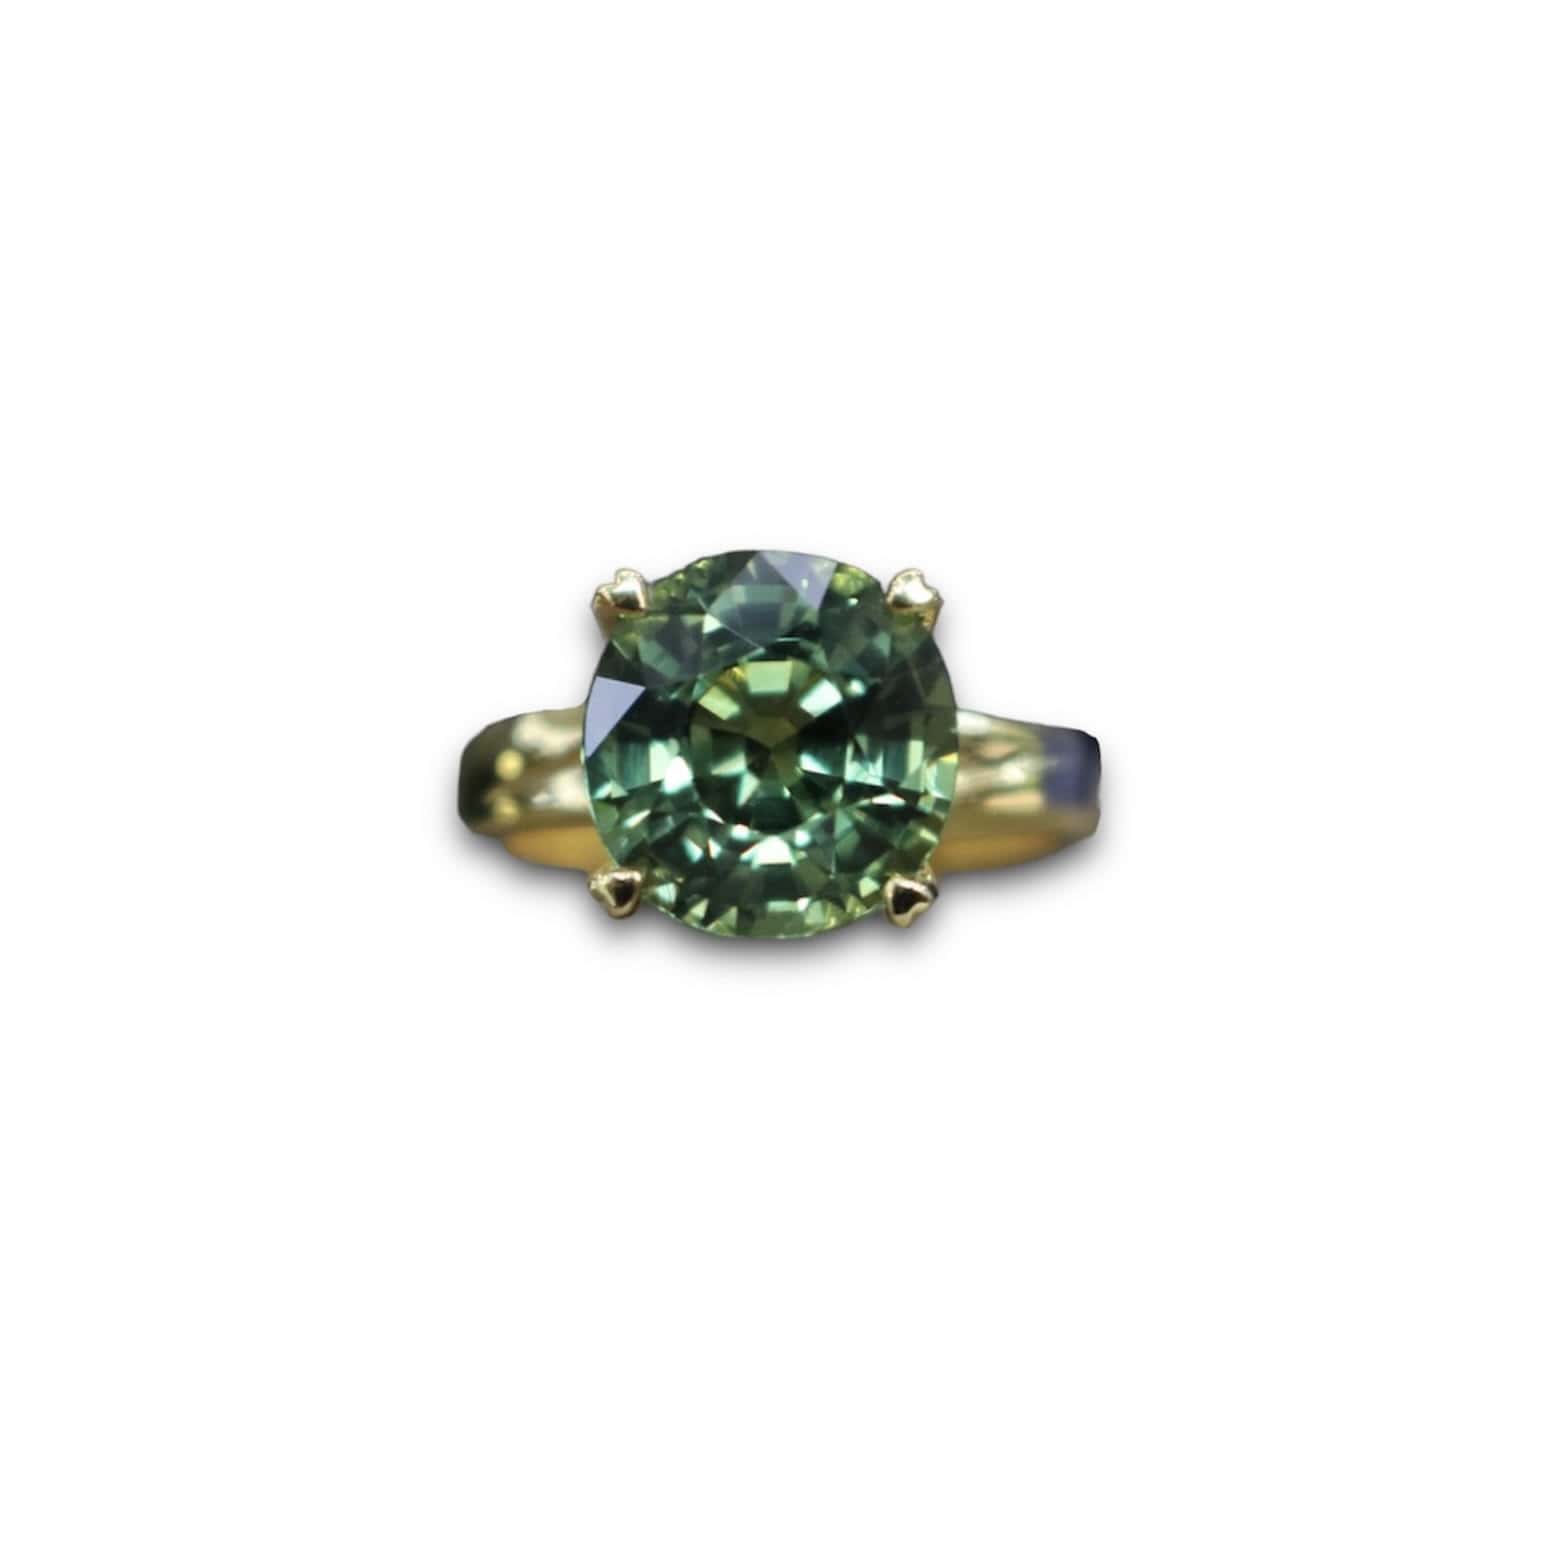 Nhẫn nữ Sapphire xanh lục tự nhiên 5,83ct - IRSP 238583